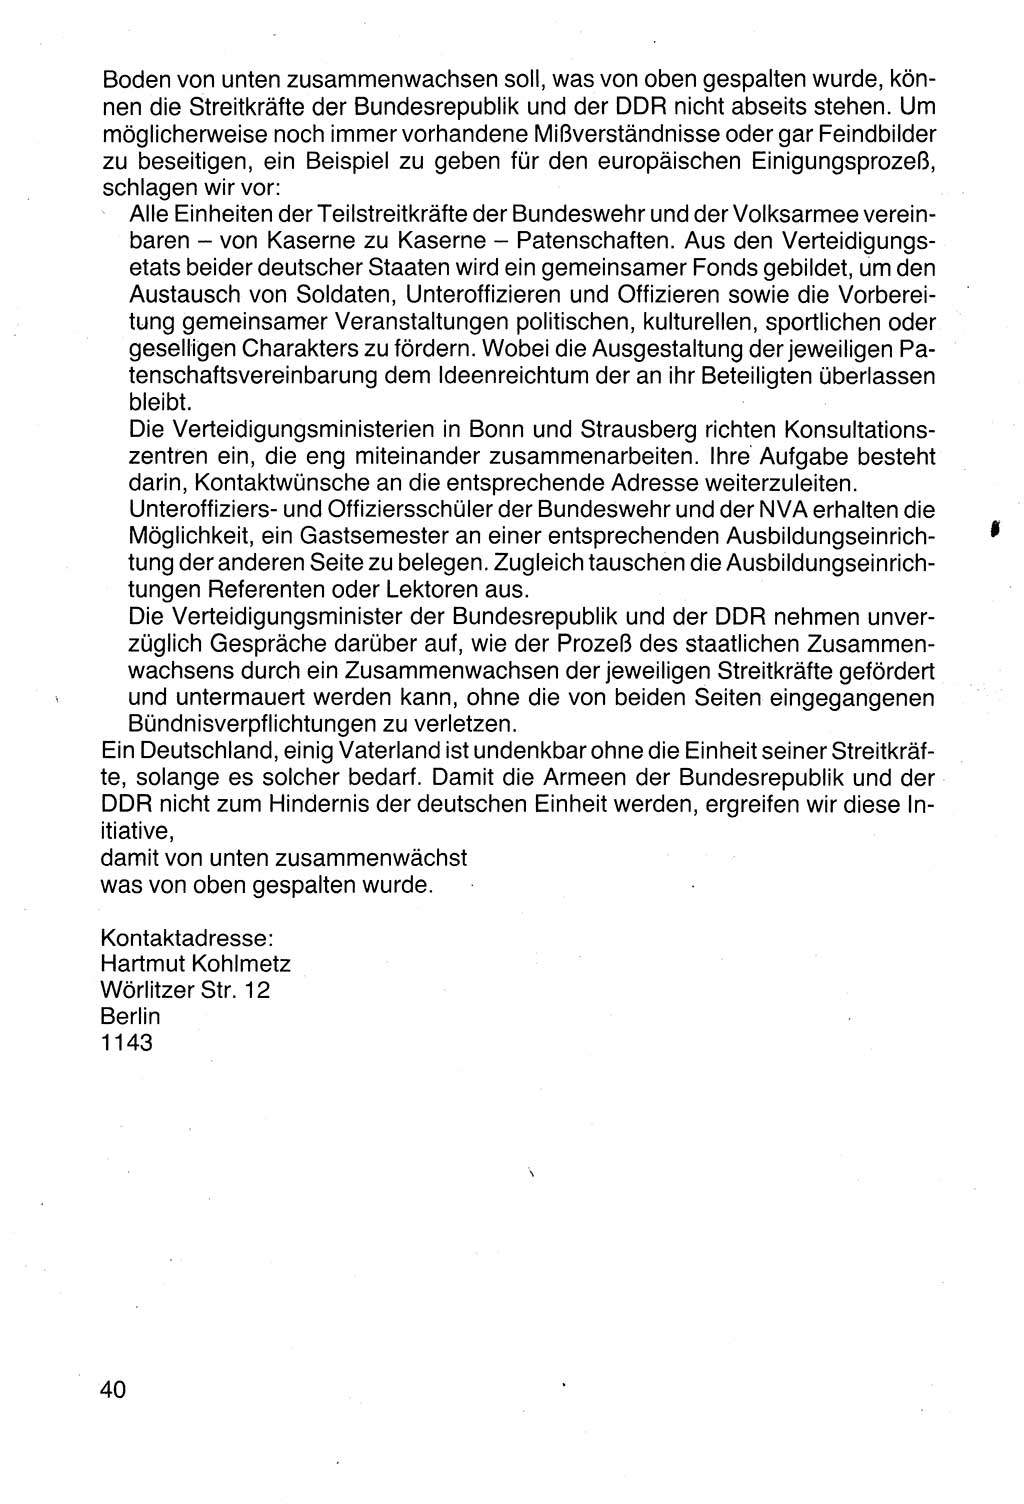 Politische Parteien und Bewegungen der DDR (Deutsche Demokratische Republik) über sich selbst 1990, Seite 40 (Pol. Part. Bew. DDR 1990, S. 40)